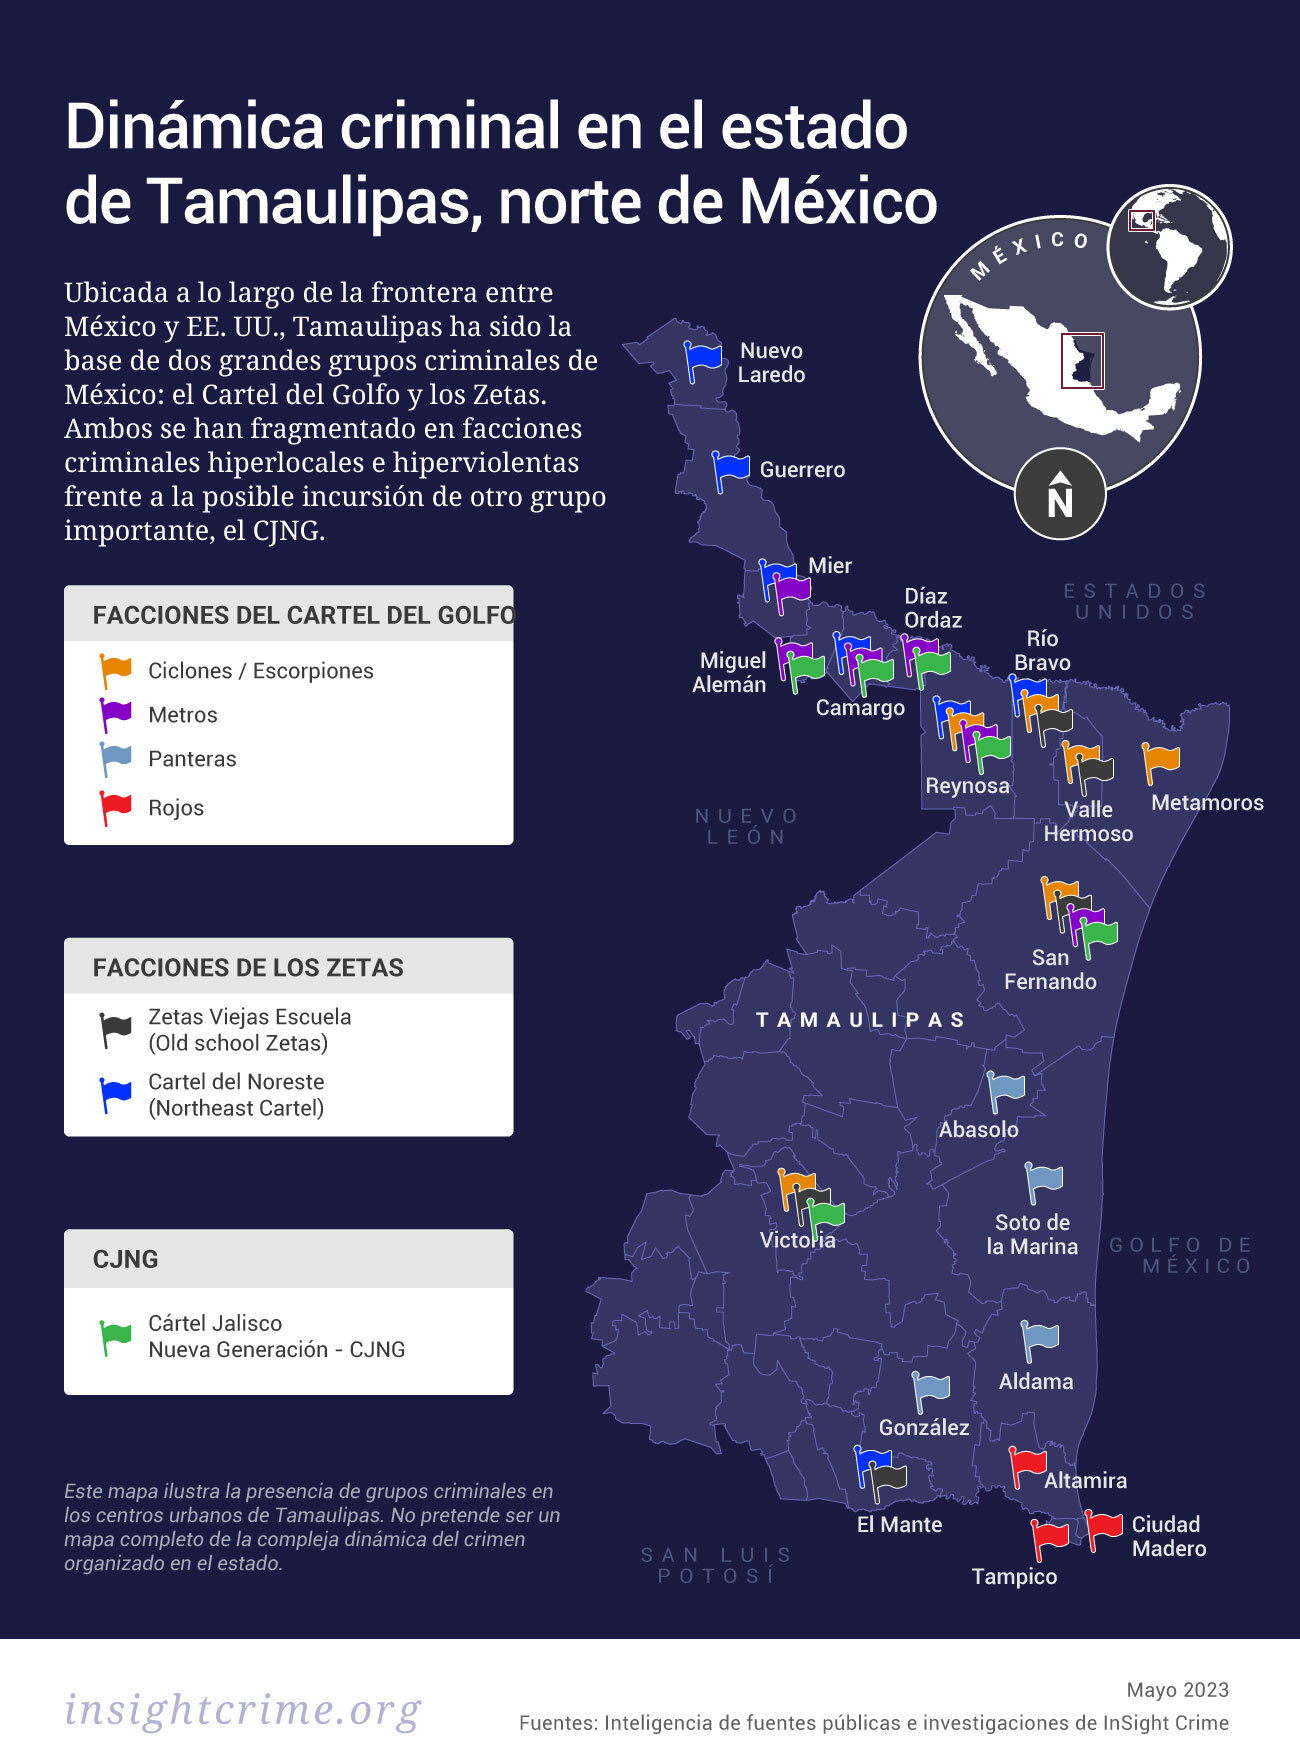 Este mapa muestra la presencia de los principales grupos criminales en los centros urbanos de Tamaulipas, norte de México. 